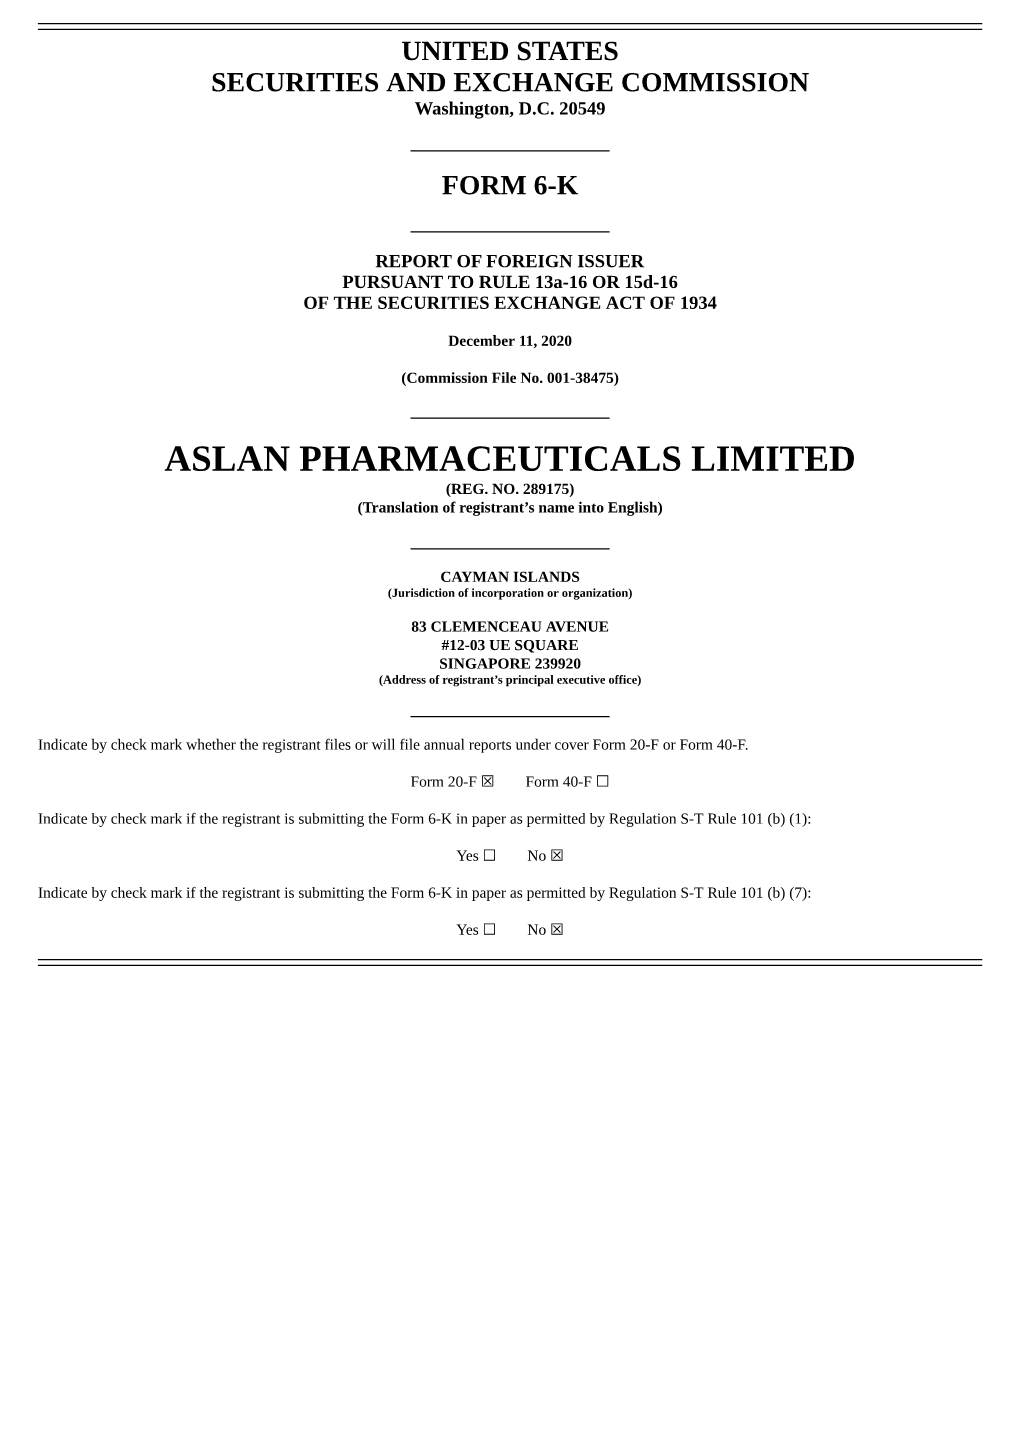 Aslan Pharmaceuticals Limited (Reg